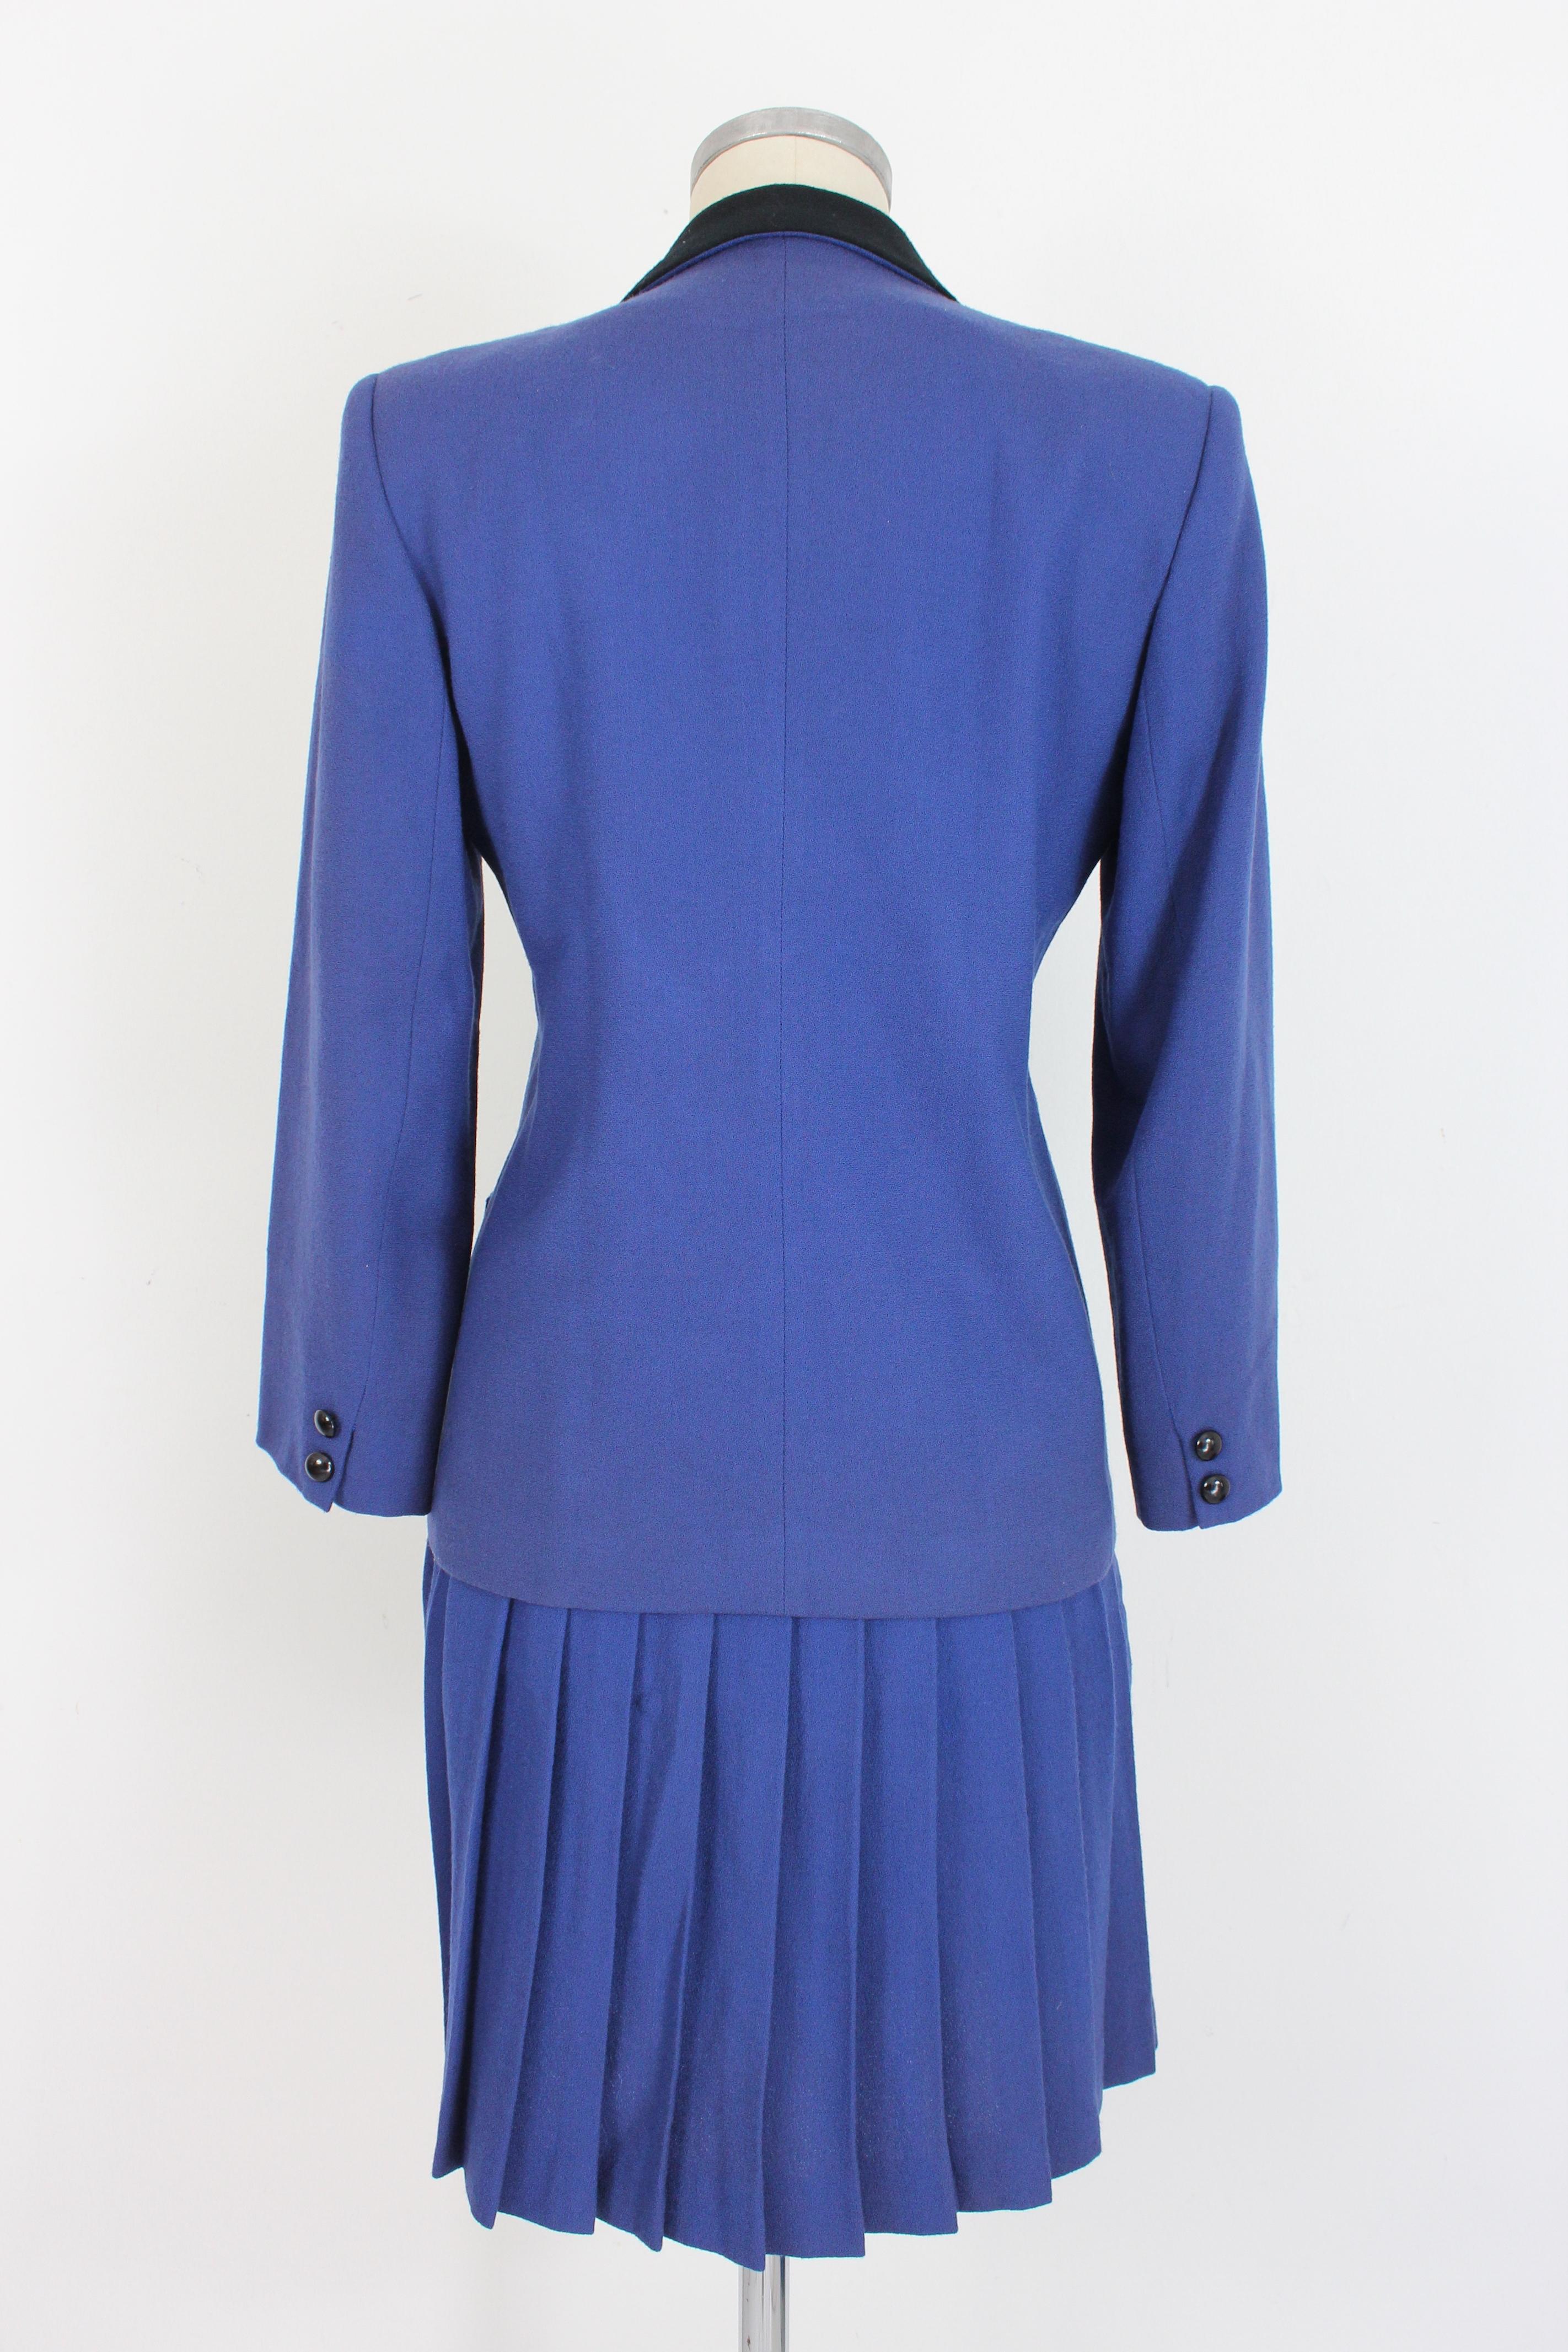 Purple Oleg Cassini Blue Black Wool Pleated Evening Suit Skirt